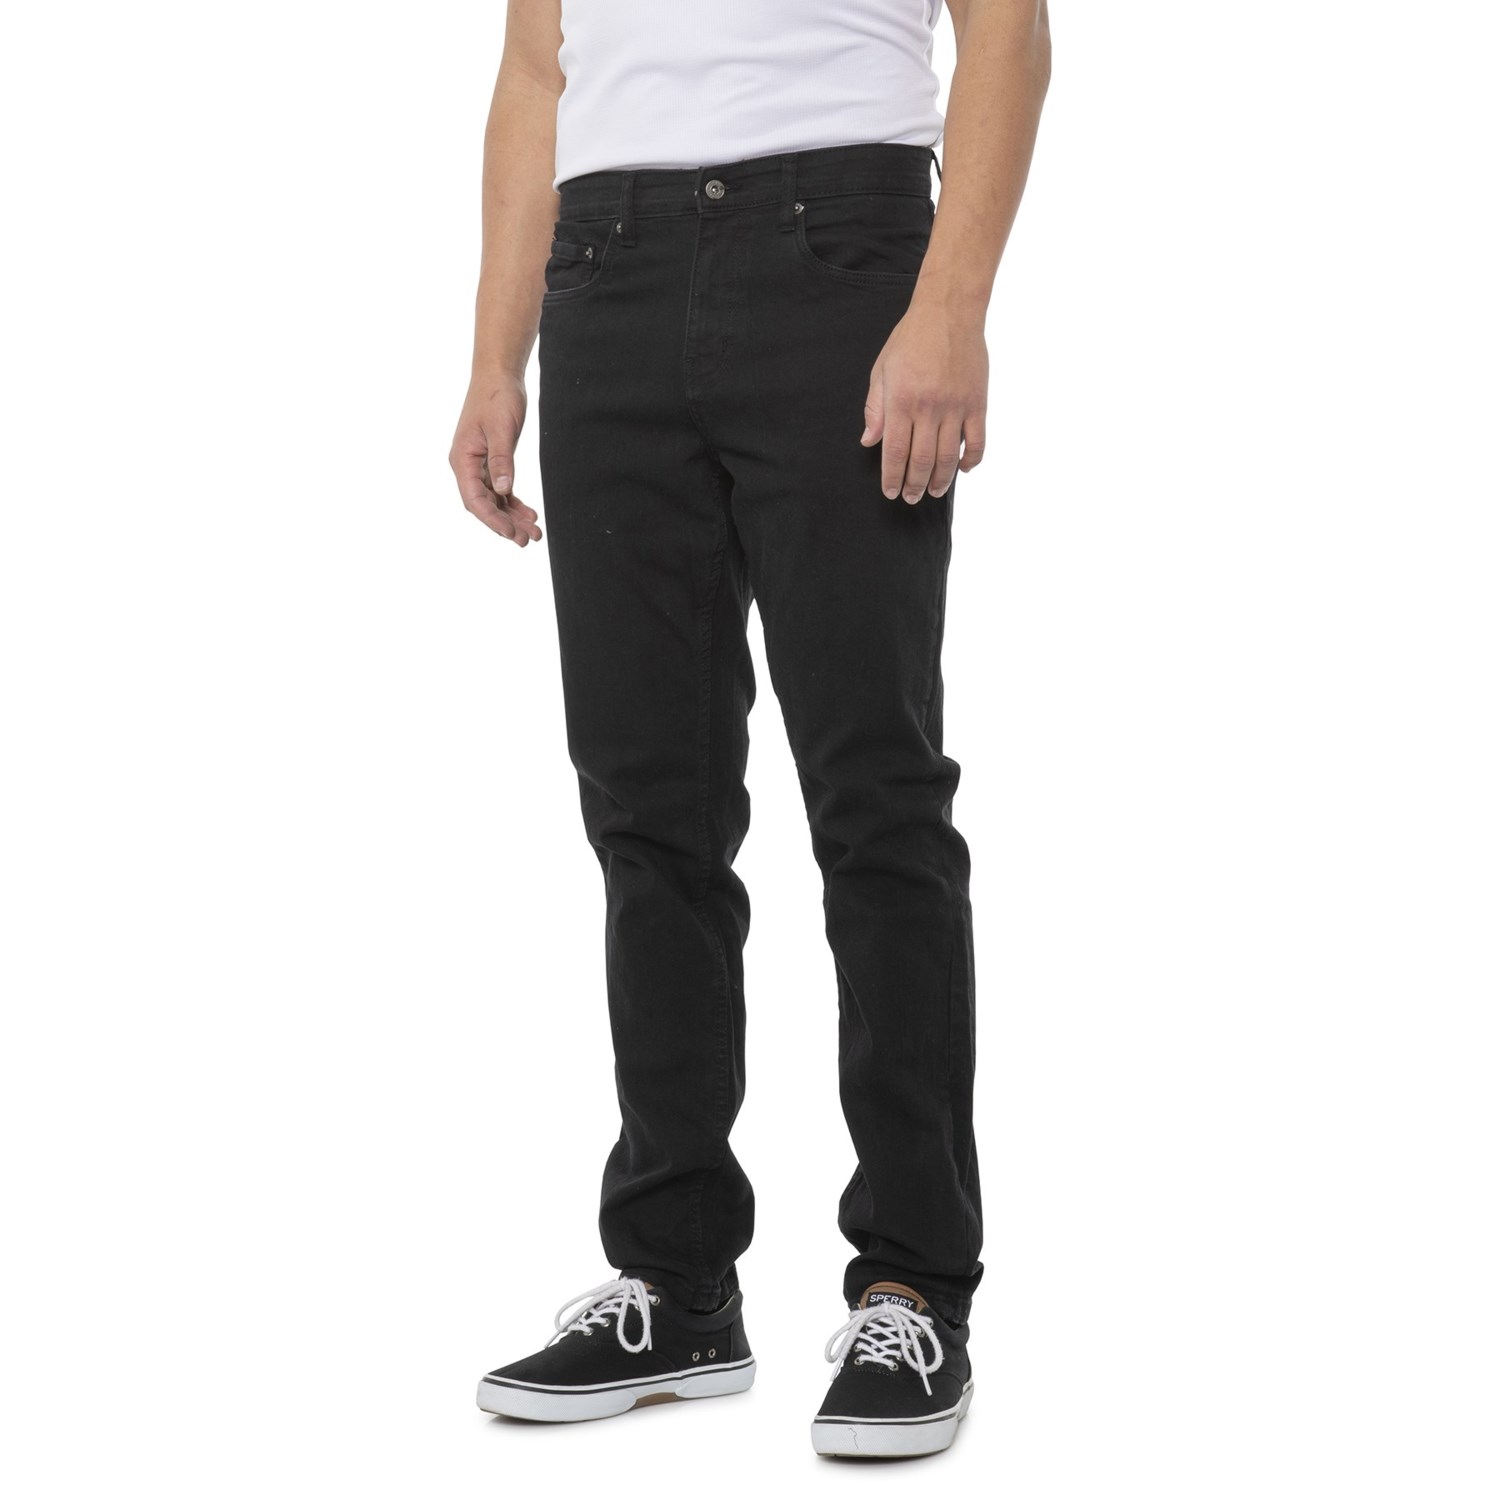 Eddie Bauer Comfort Flex Jeans (For Men) - Save 62%